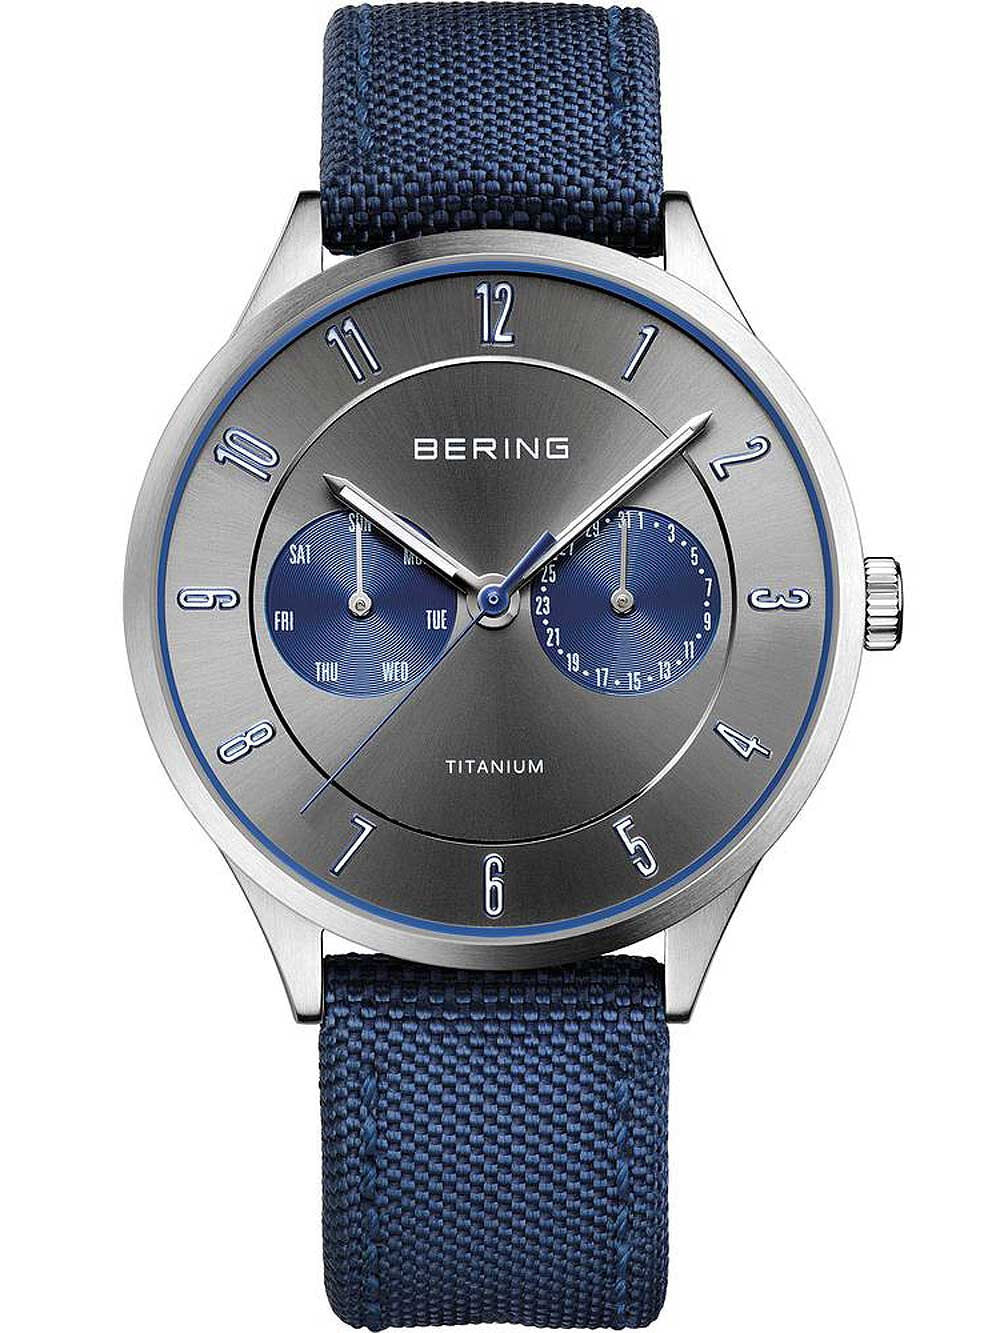 Мужские наручные часы с синим текстильным ремешком Bering 11539-873 titanium mens watch 39mm 5ATM